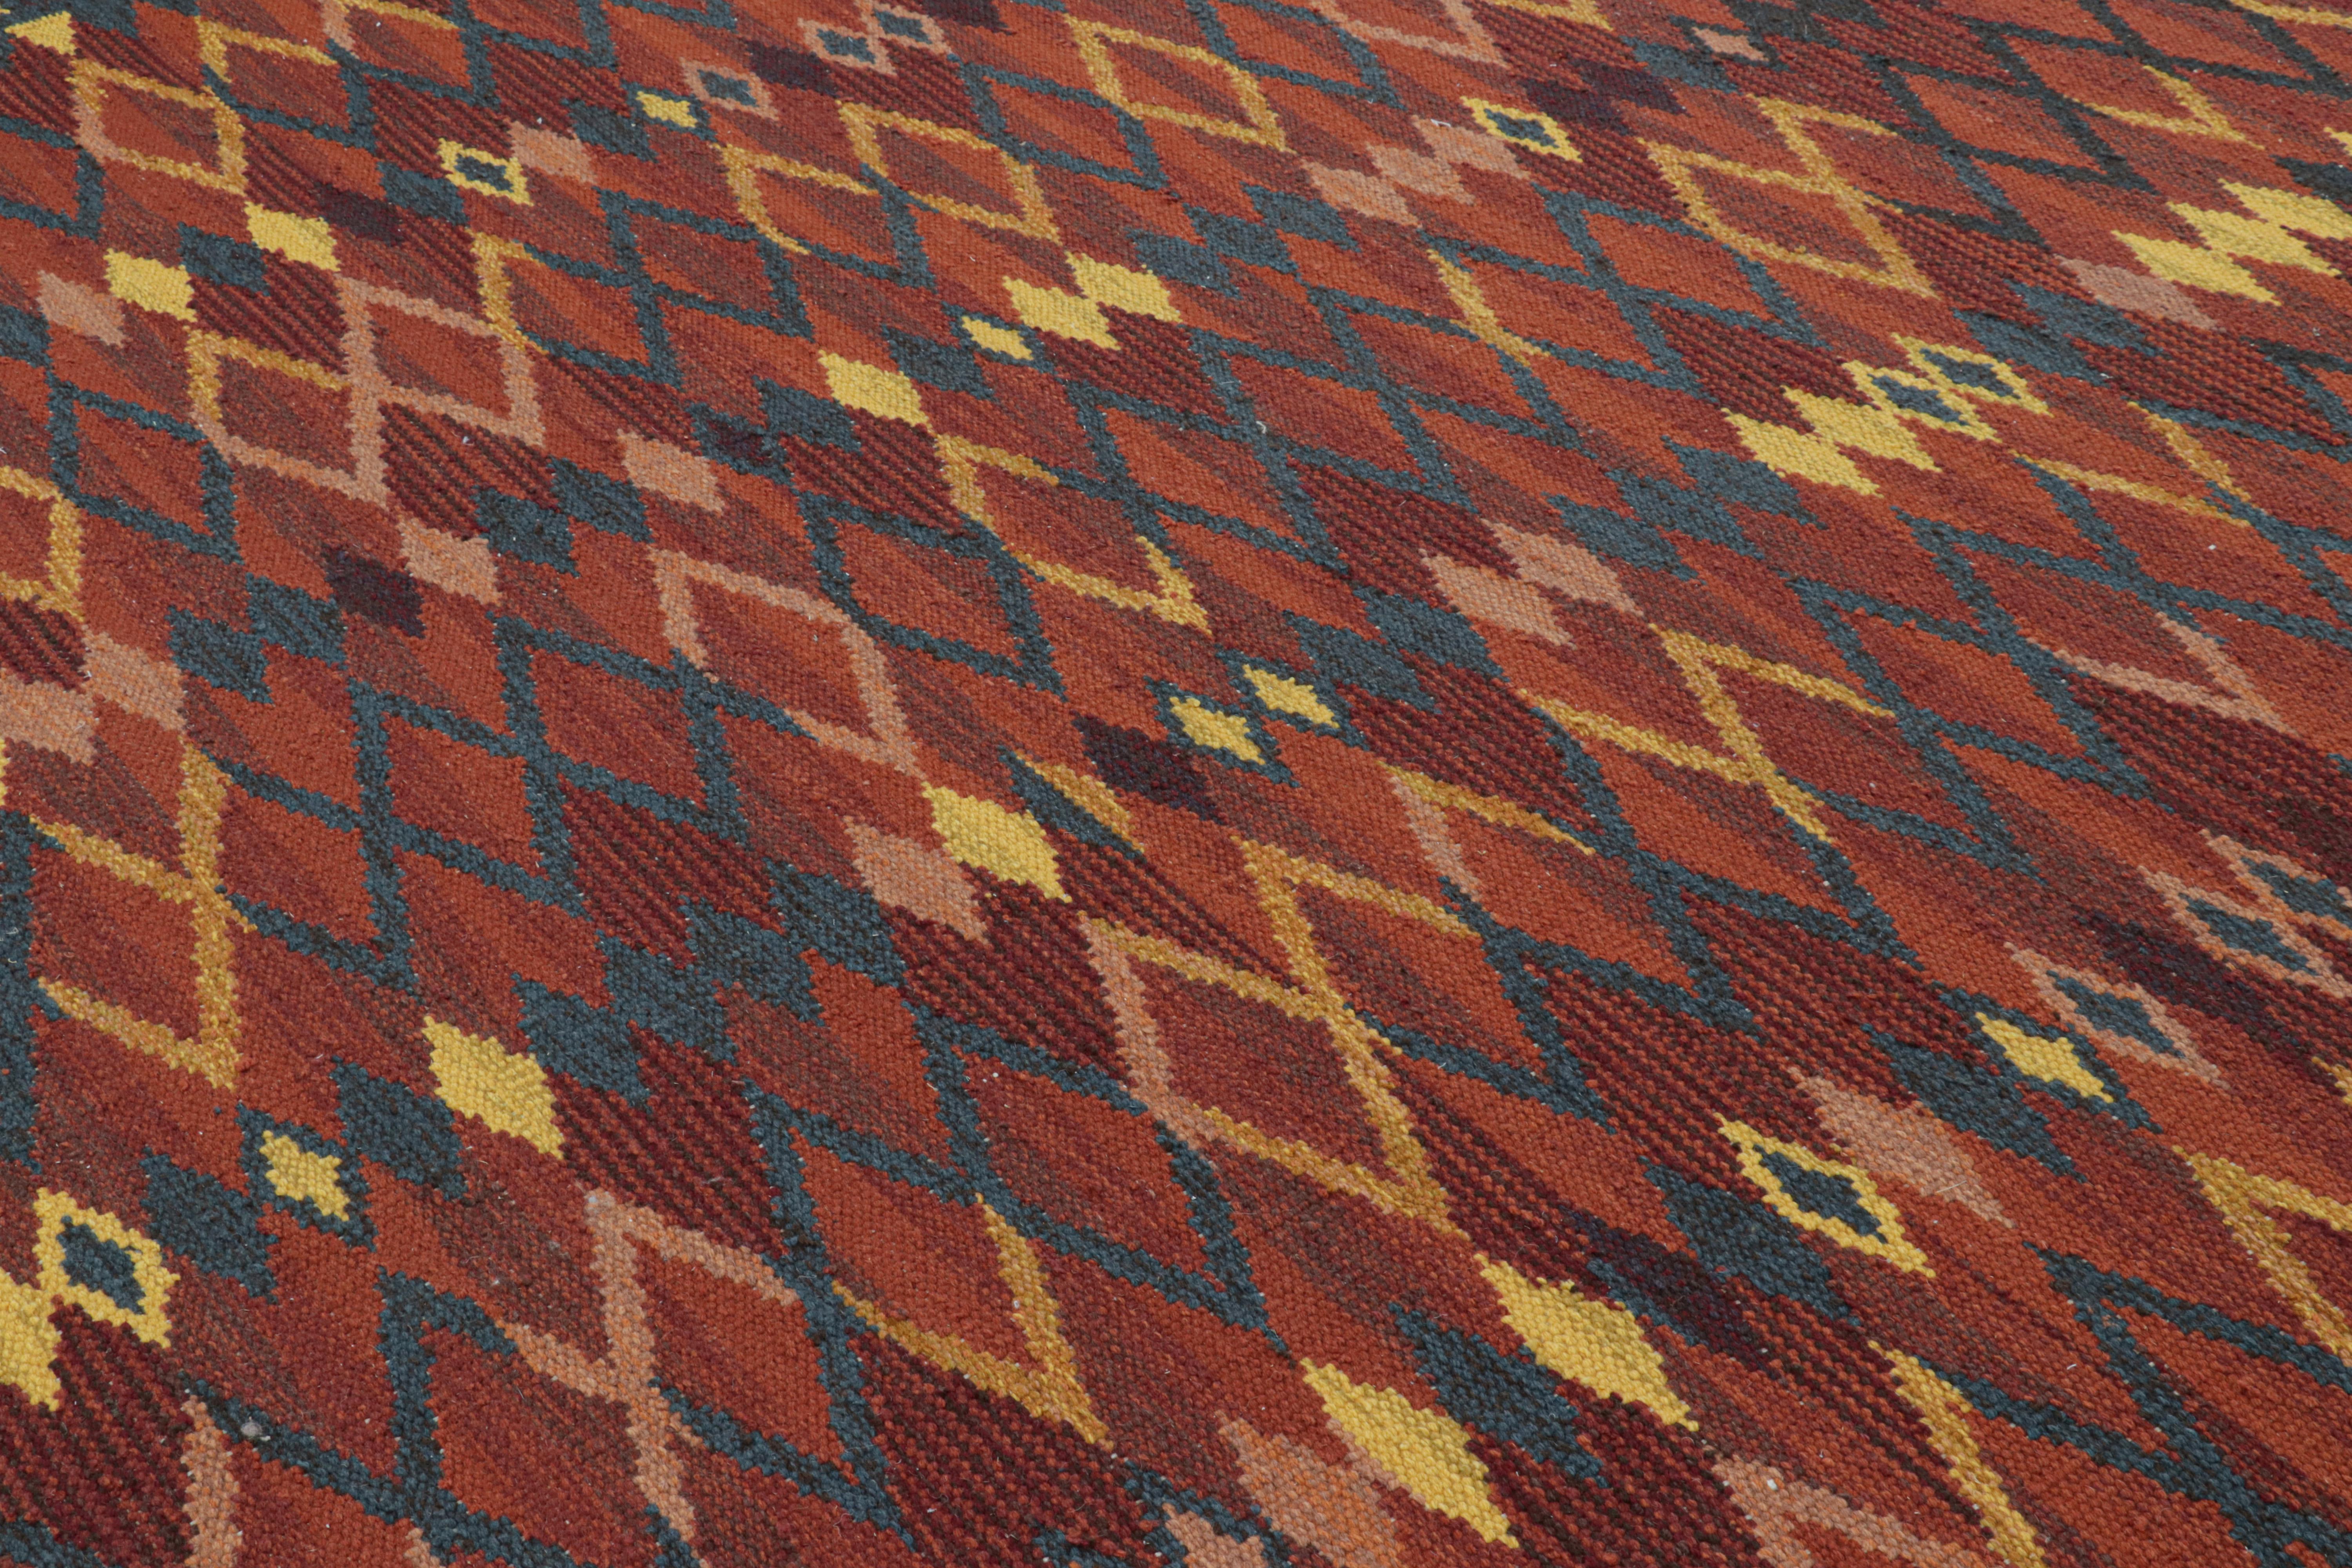 Ce tapis moderne de style suédois 9x12 est un nouvel ajout audacieux à la collection Scandinavian de Rug & Kilim. Tissé à la main dans un tissage plat en laine avec également des fils naturels non teints, son design s'inspire des modèles